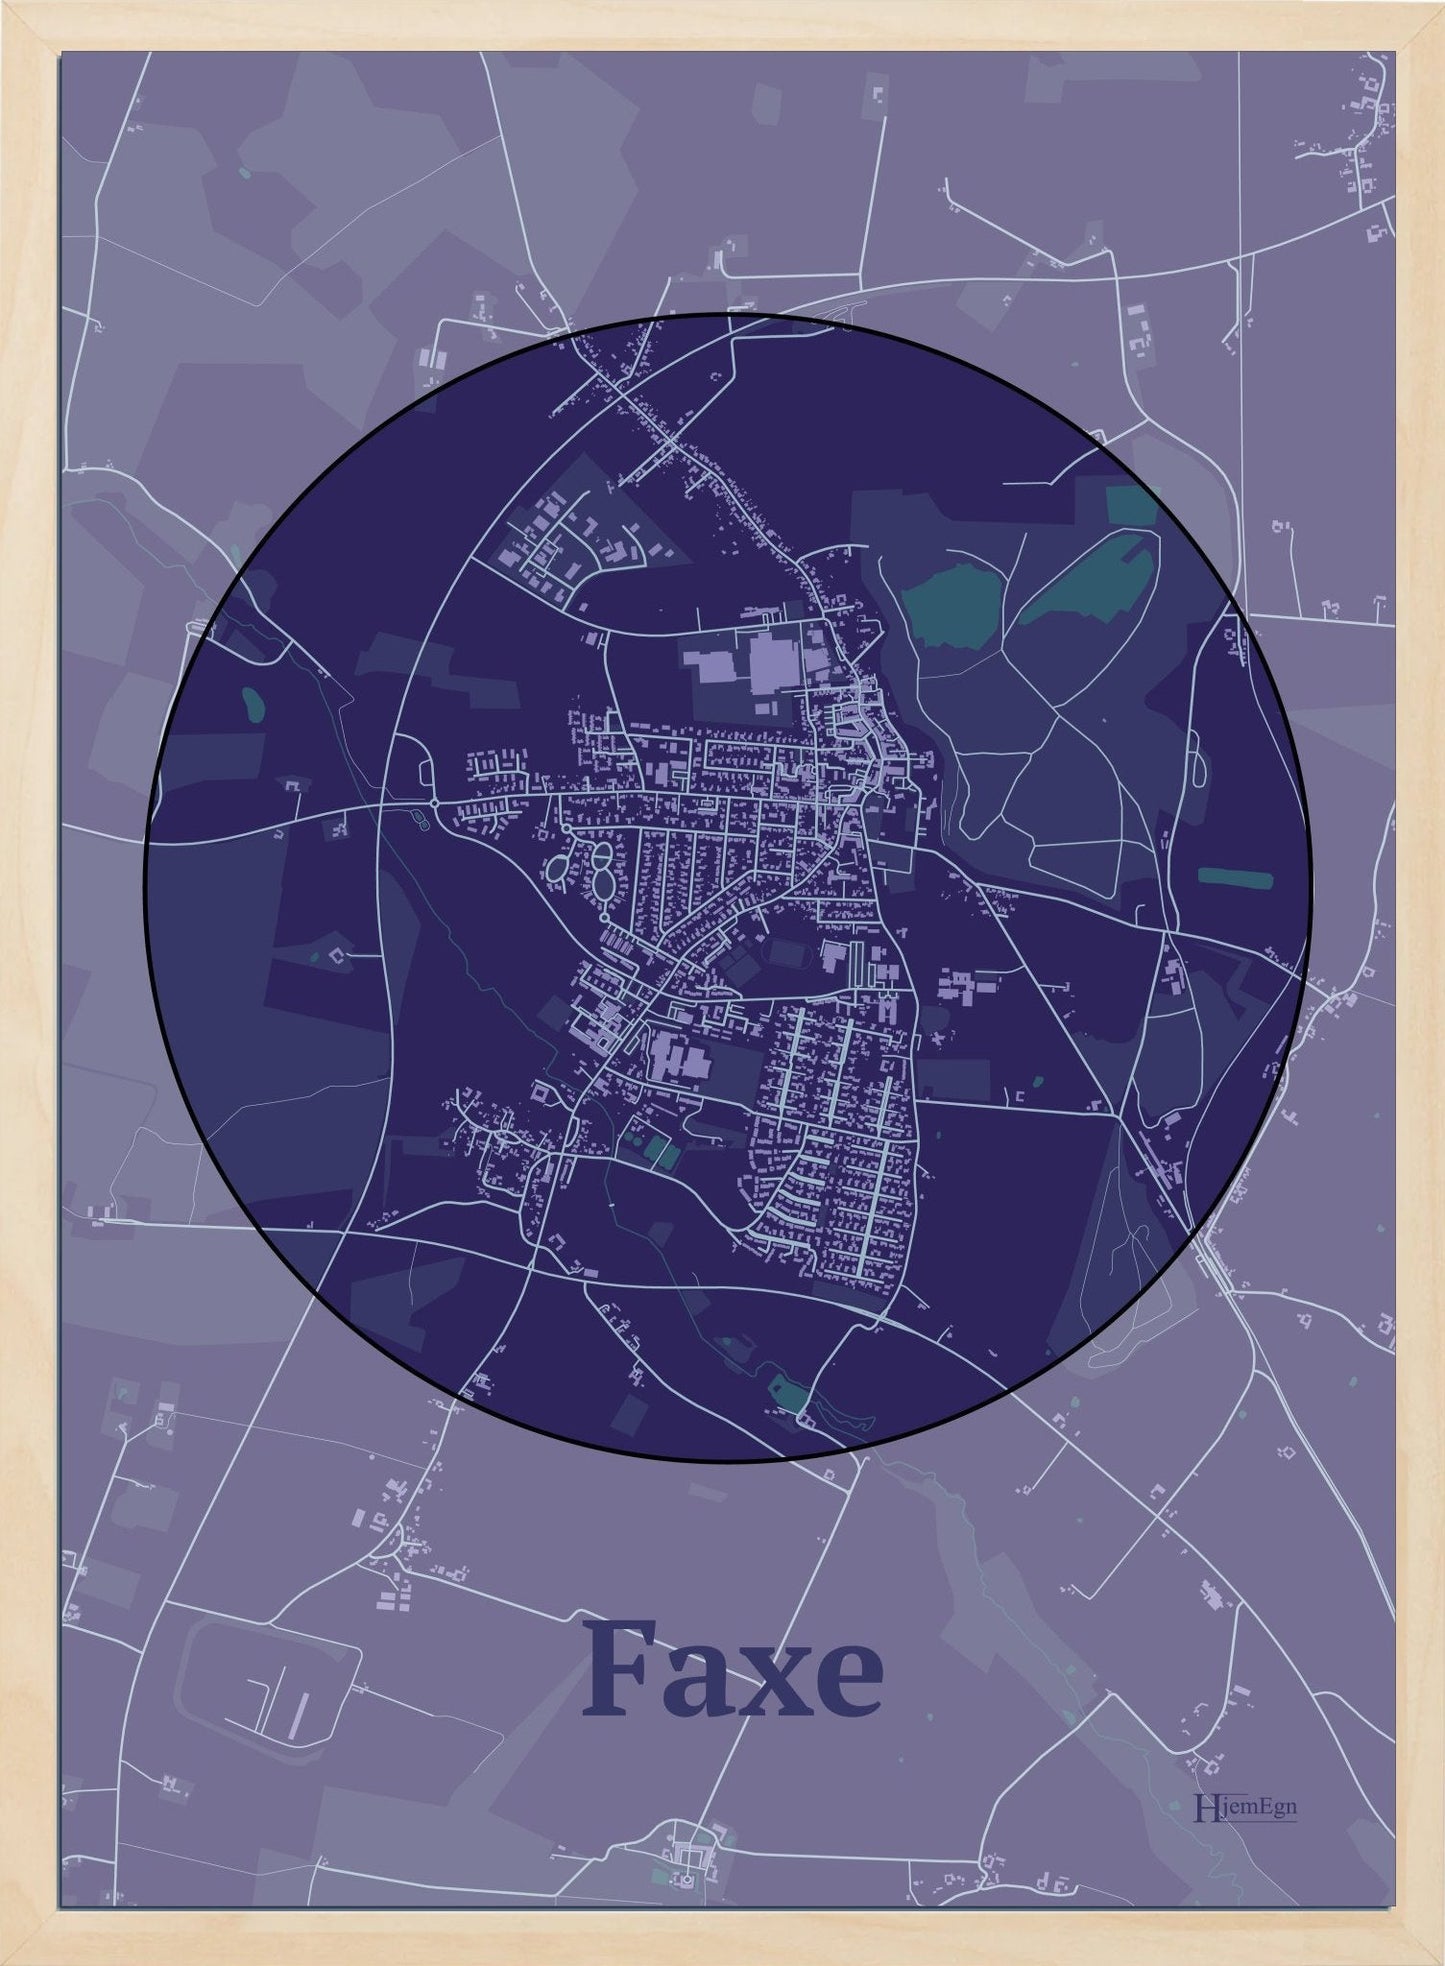 Faxe plakat i farve mørk lilla og HjemEgn.dk design centrum. Design bykort for Faxe